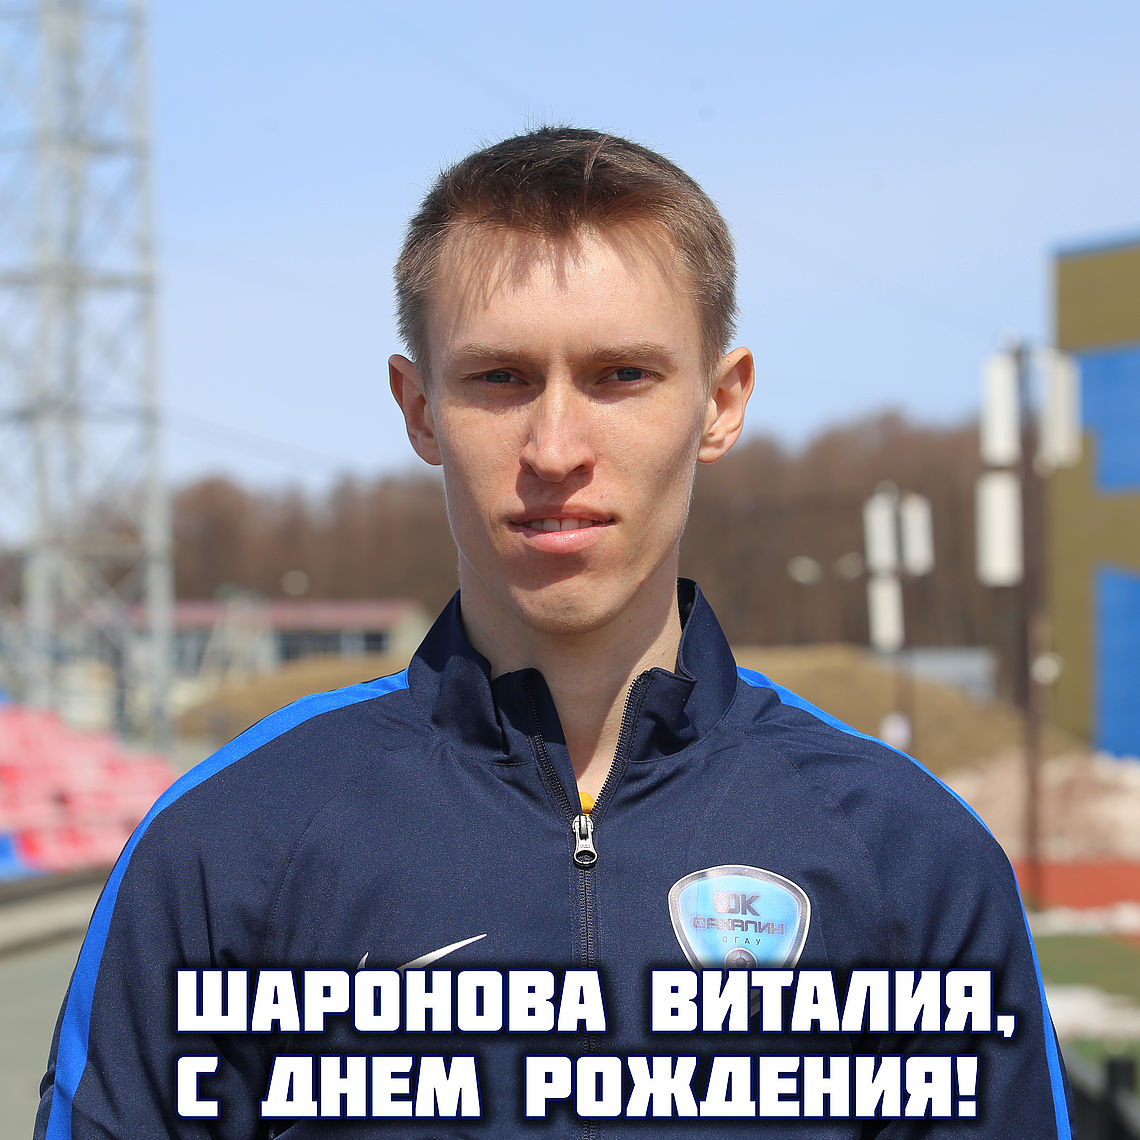 С днем рождения, Виталий Александрович!